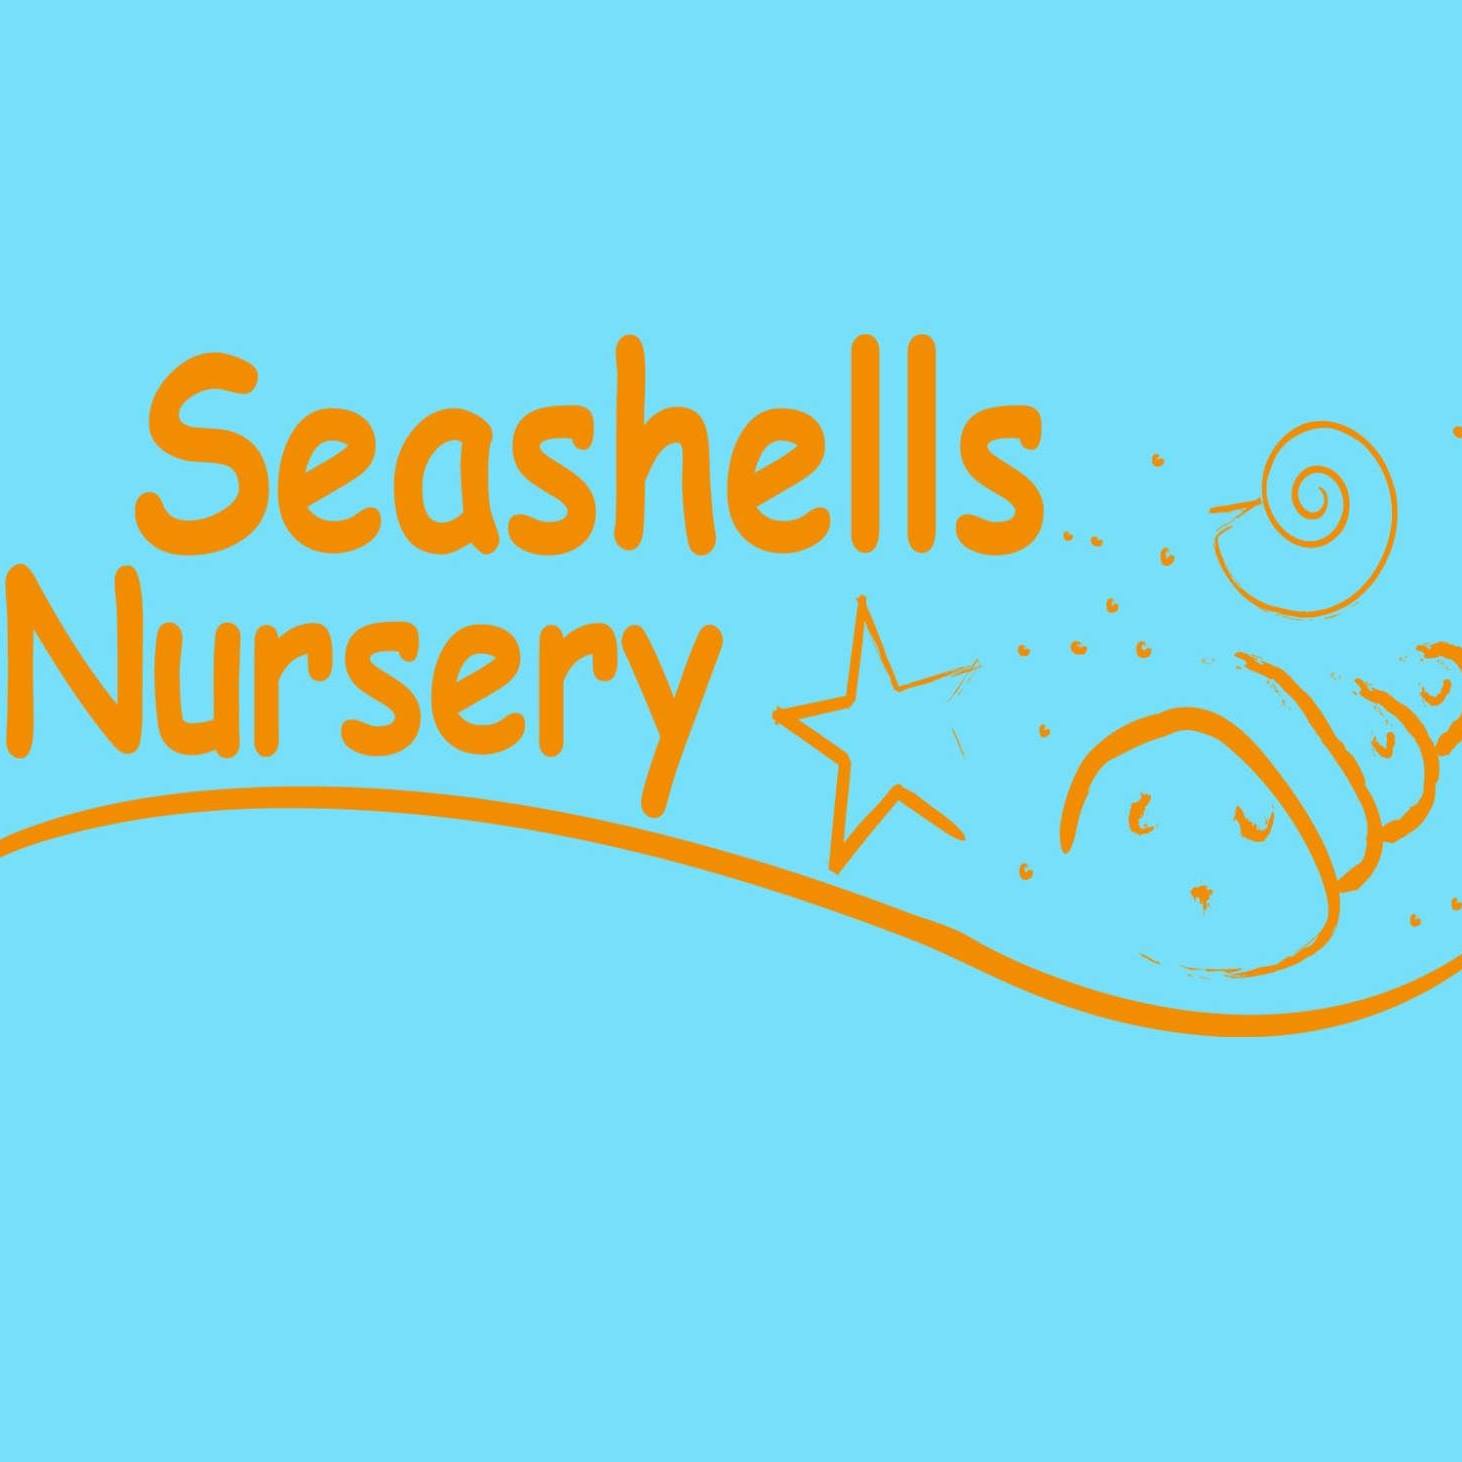 Nursery logo Seashells Nursery